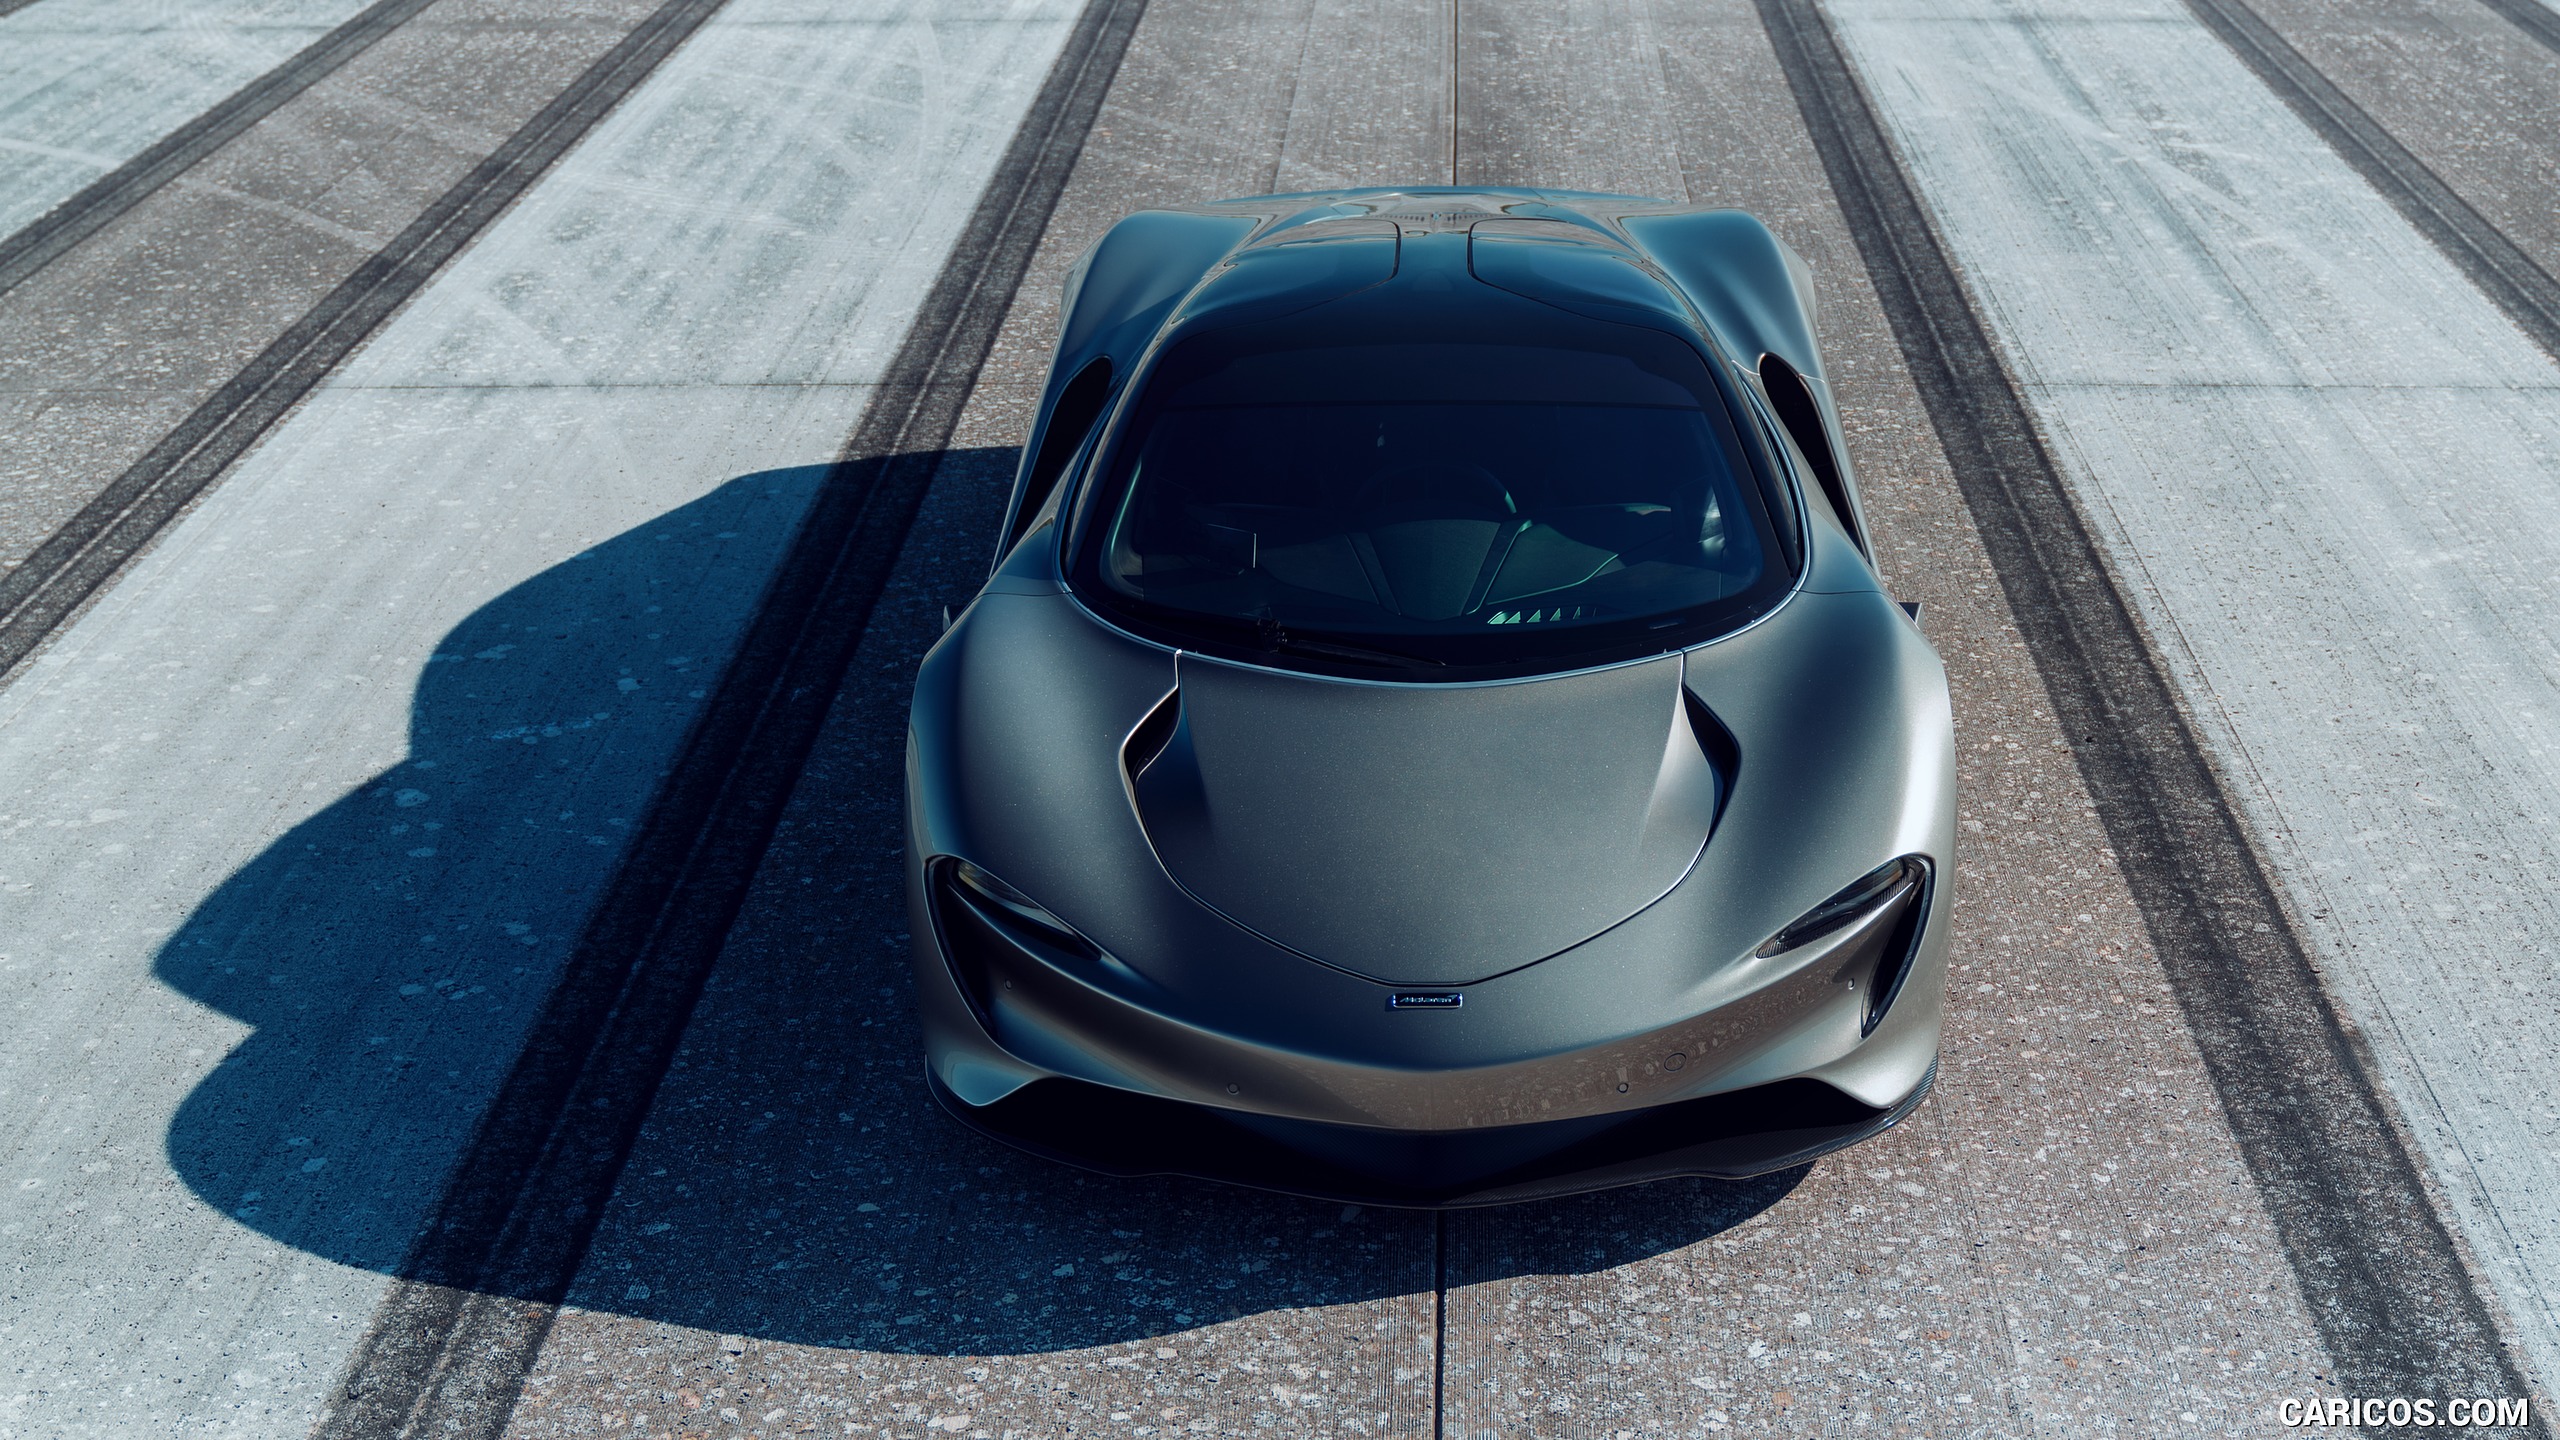 2019 McLaren Speedtail - Front, #23 of 39